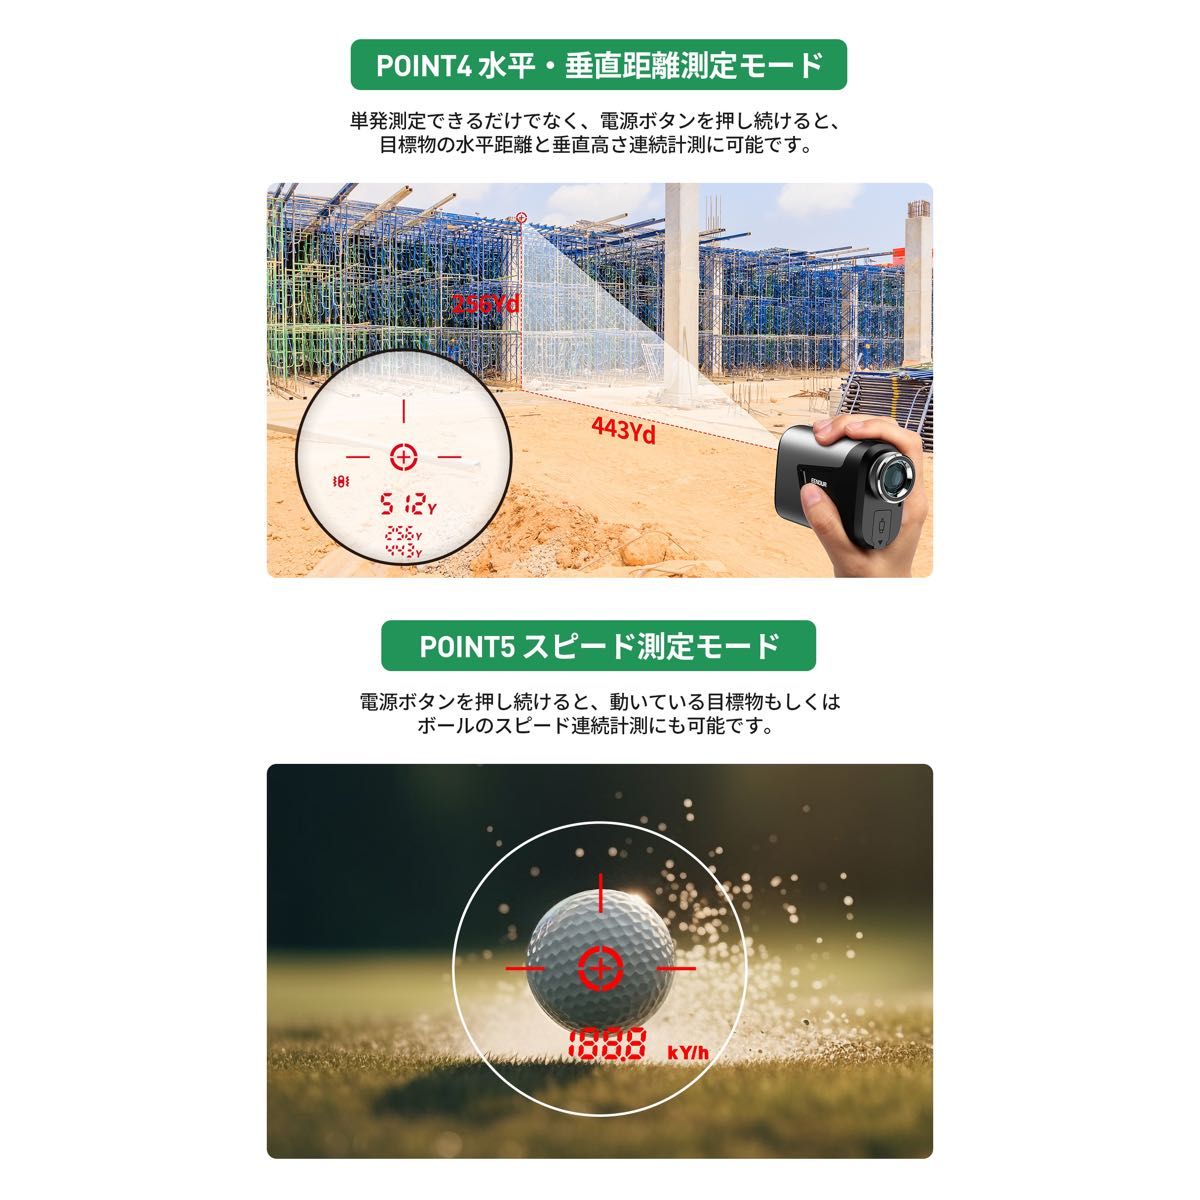 【新品】 EENOUR U1000RG ゴルフ レーザー距離計 ケース セット ゴルフスコープ 距離測定器 イーノウ 